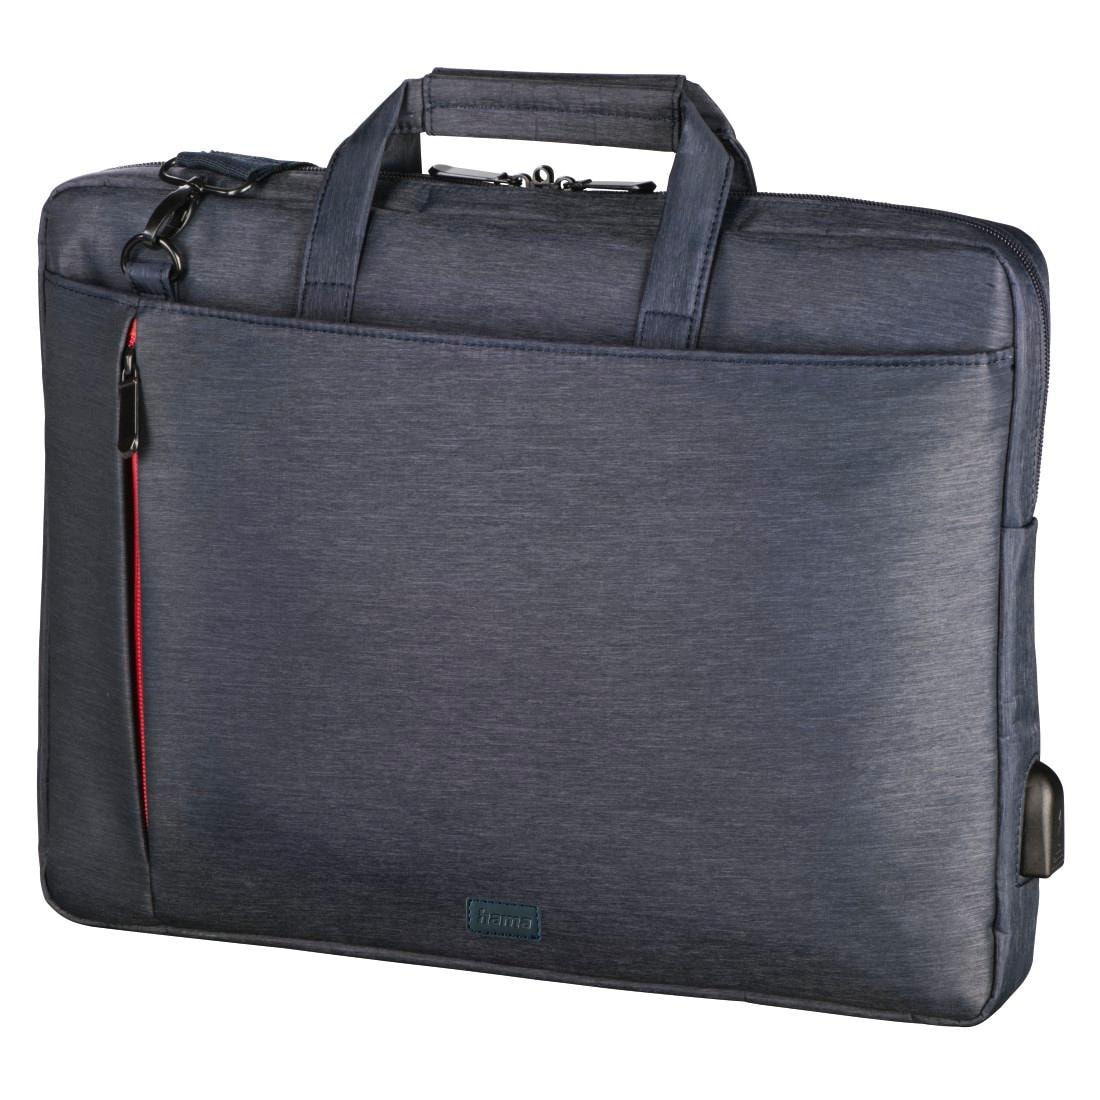 Hama Laptoptasche »Notebook Tasche bis 34 cm (13,3 Zoll), Farbe Blau, modisches Design«, Mit Tabletfach, Vordertaschen, Organizerstruktur, Trolleyband,USB-Port